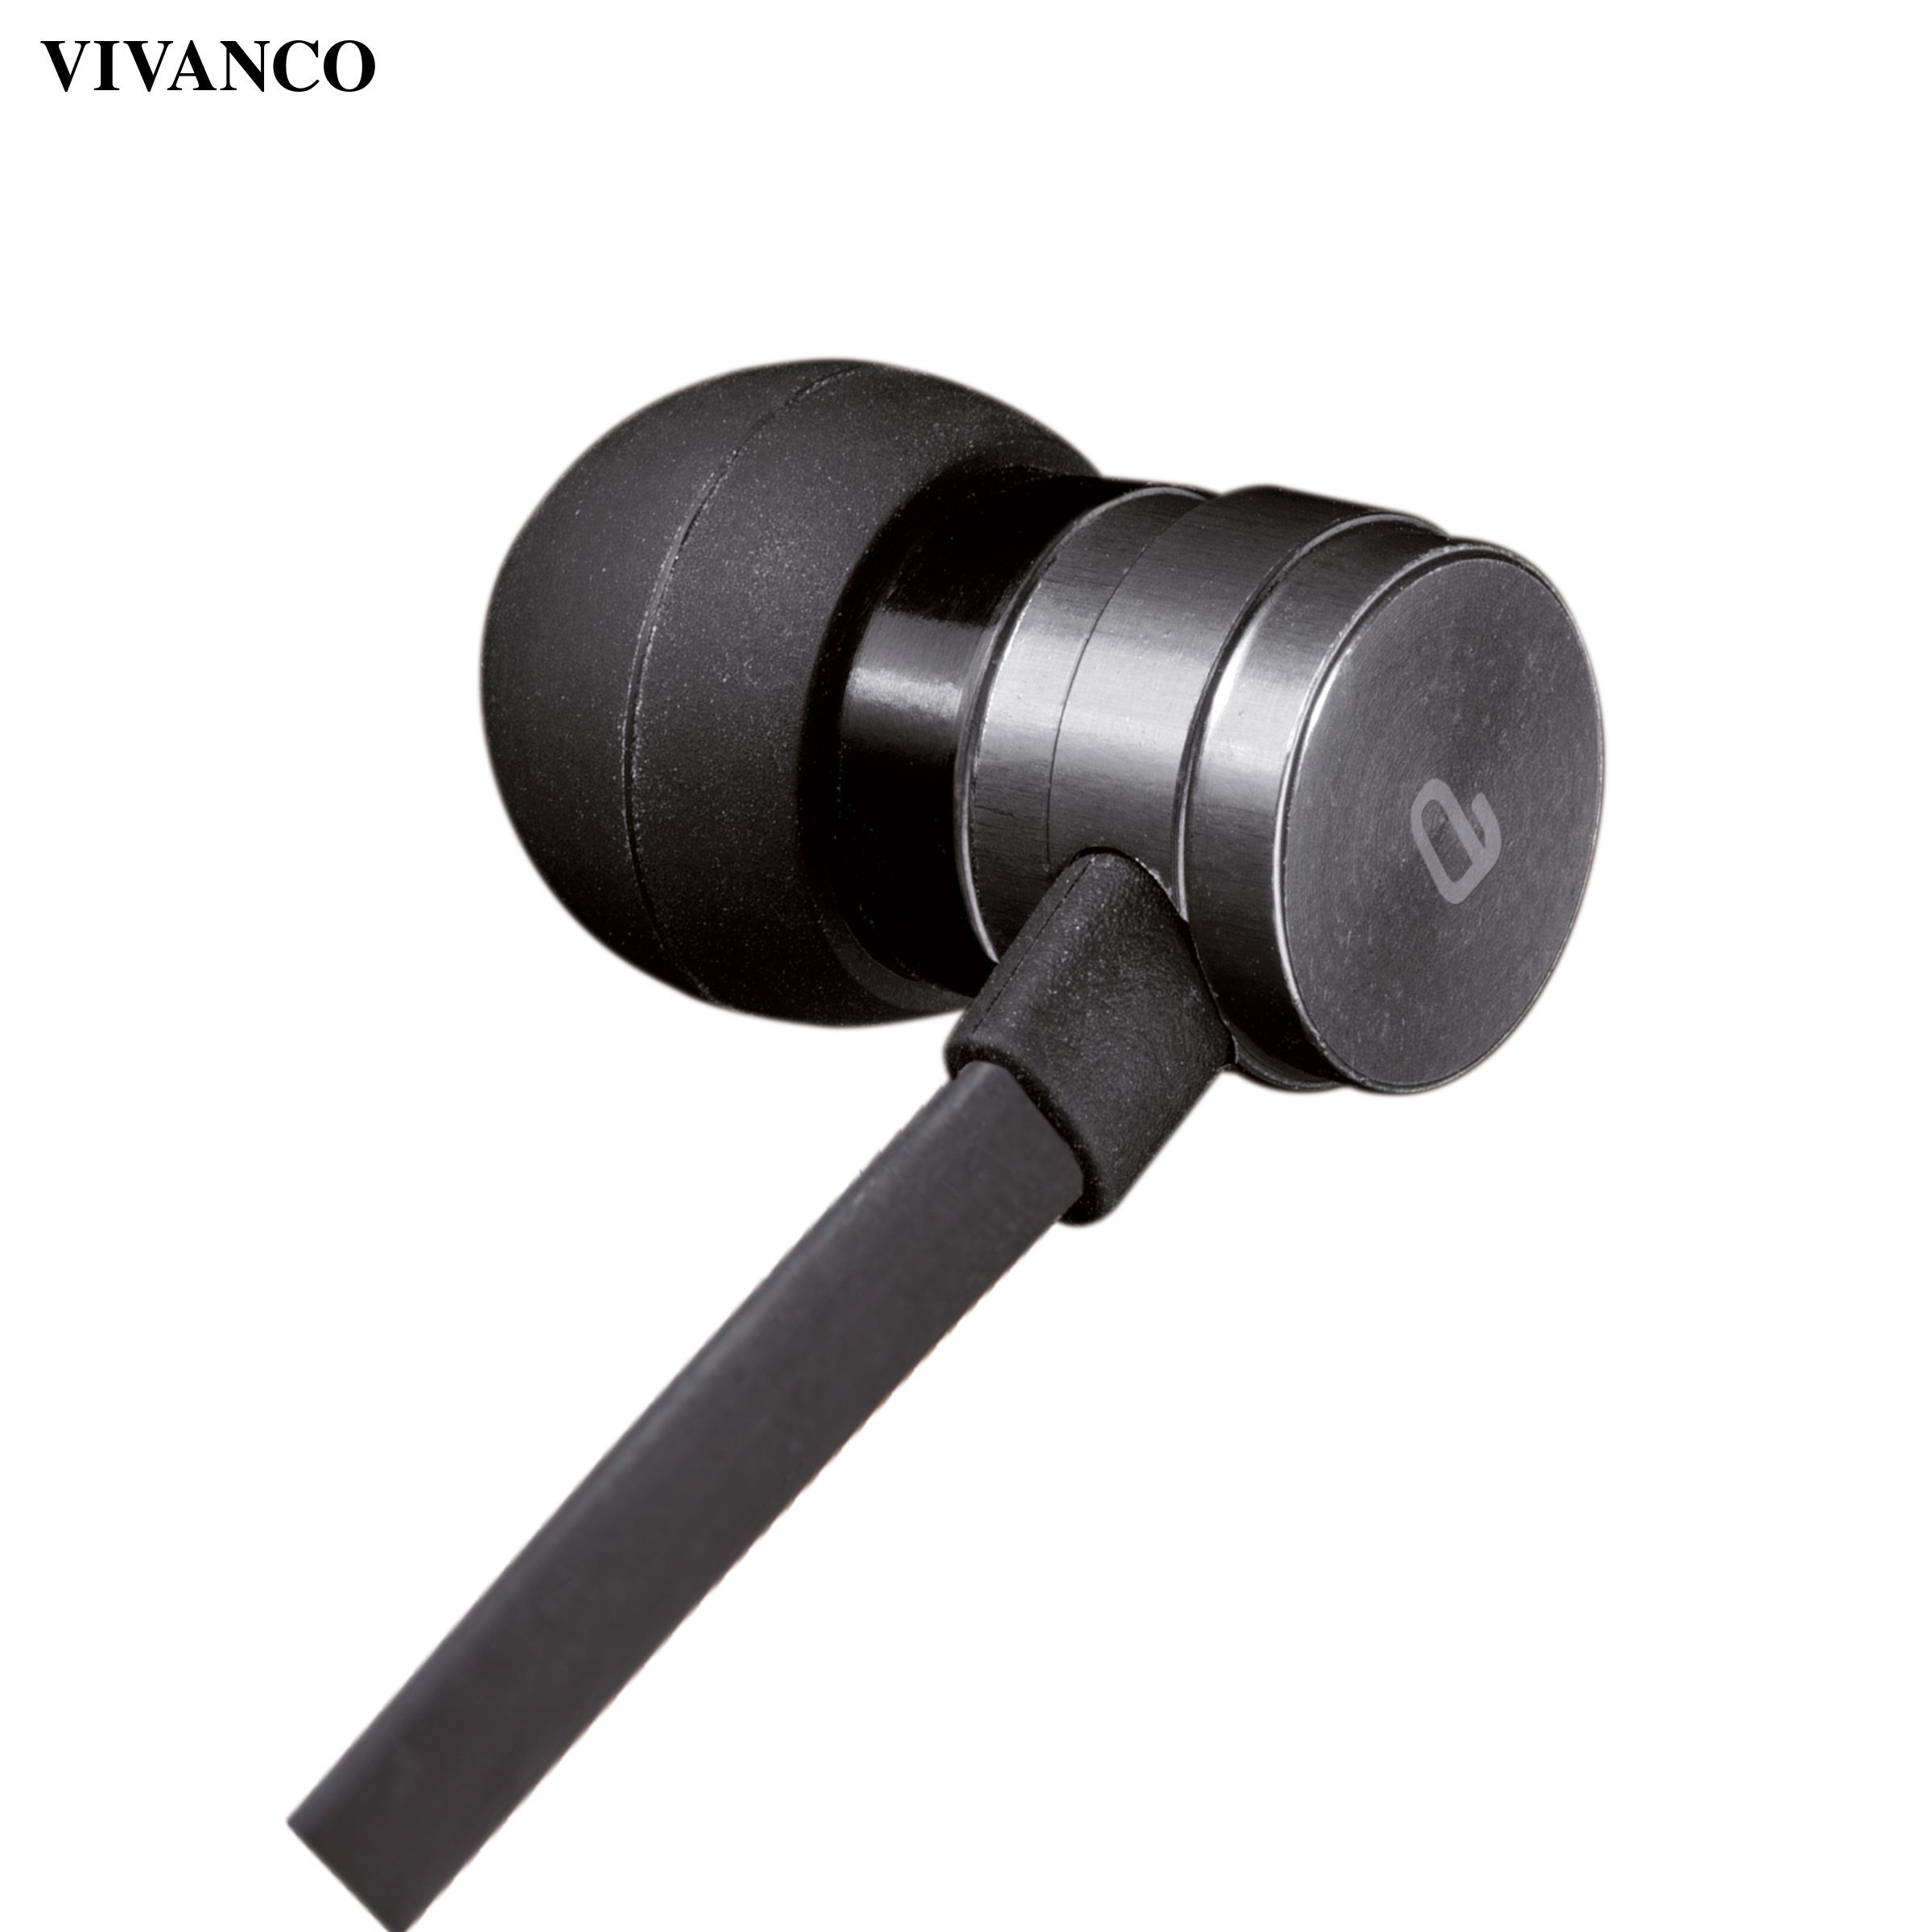 Vivanco Kopfhörer (Tragbares Ladecase, Gute Qualität und ausgewogener Klang, 1 Stunde)